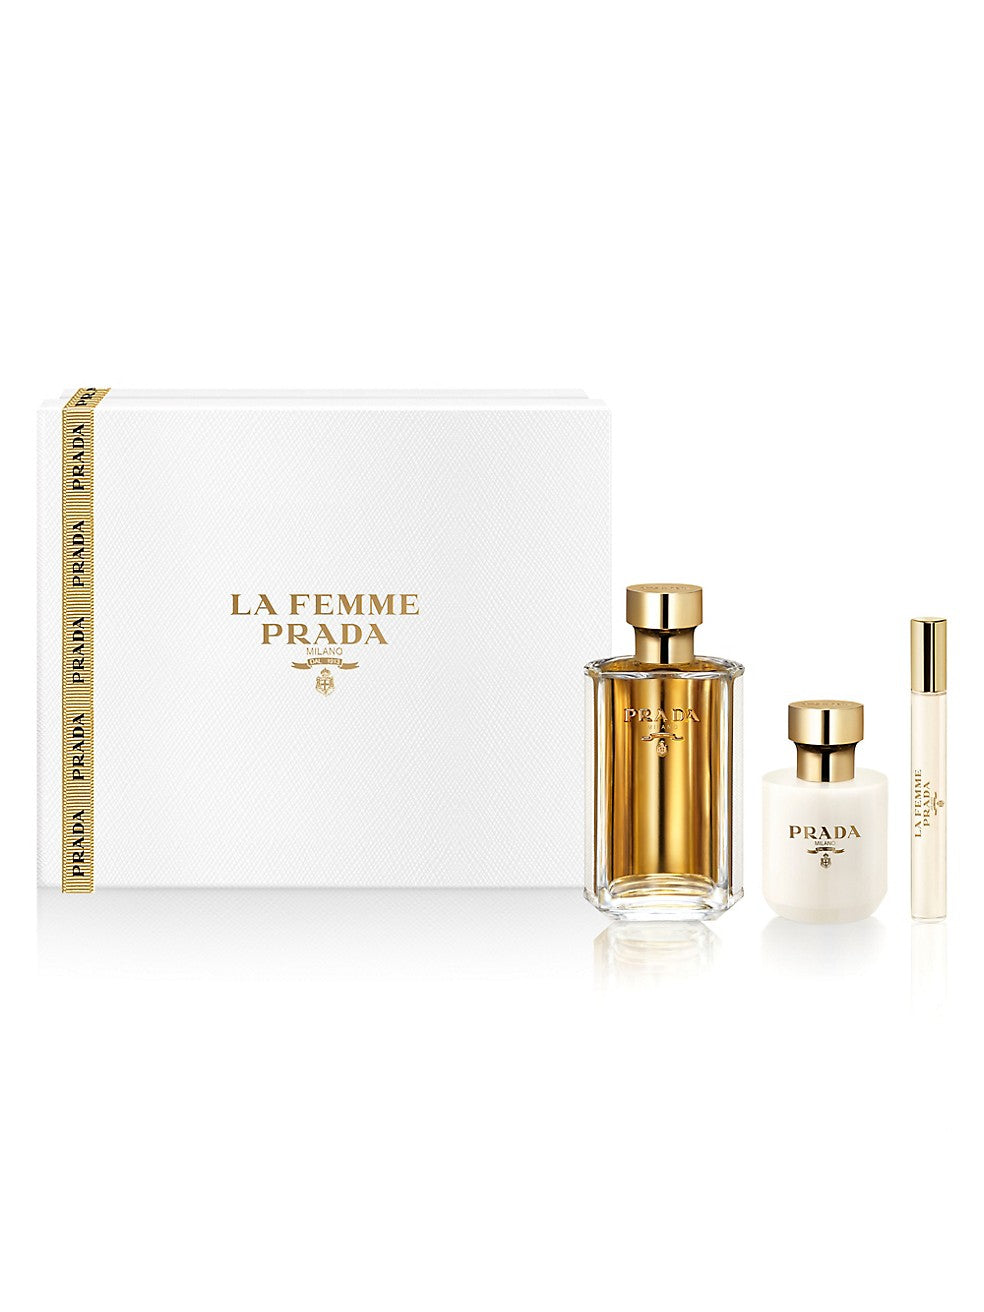 La Femme Prada Eau de Parfum Holiday 3-Piece Set